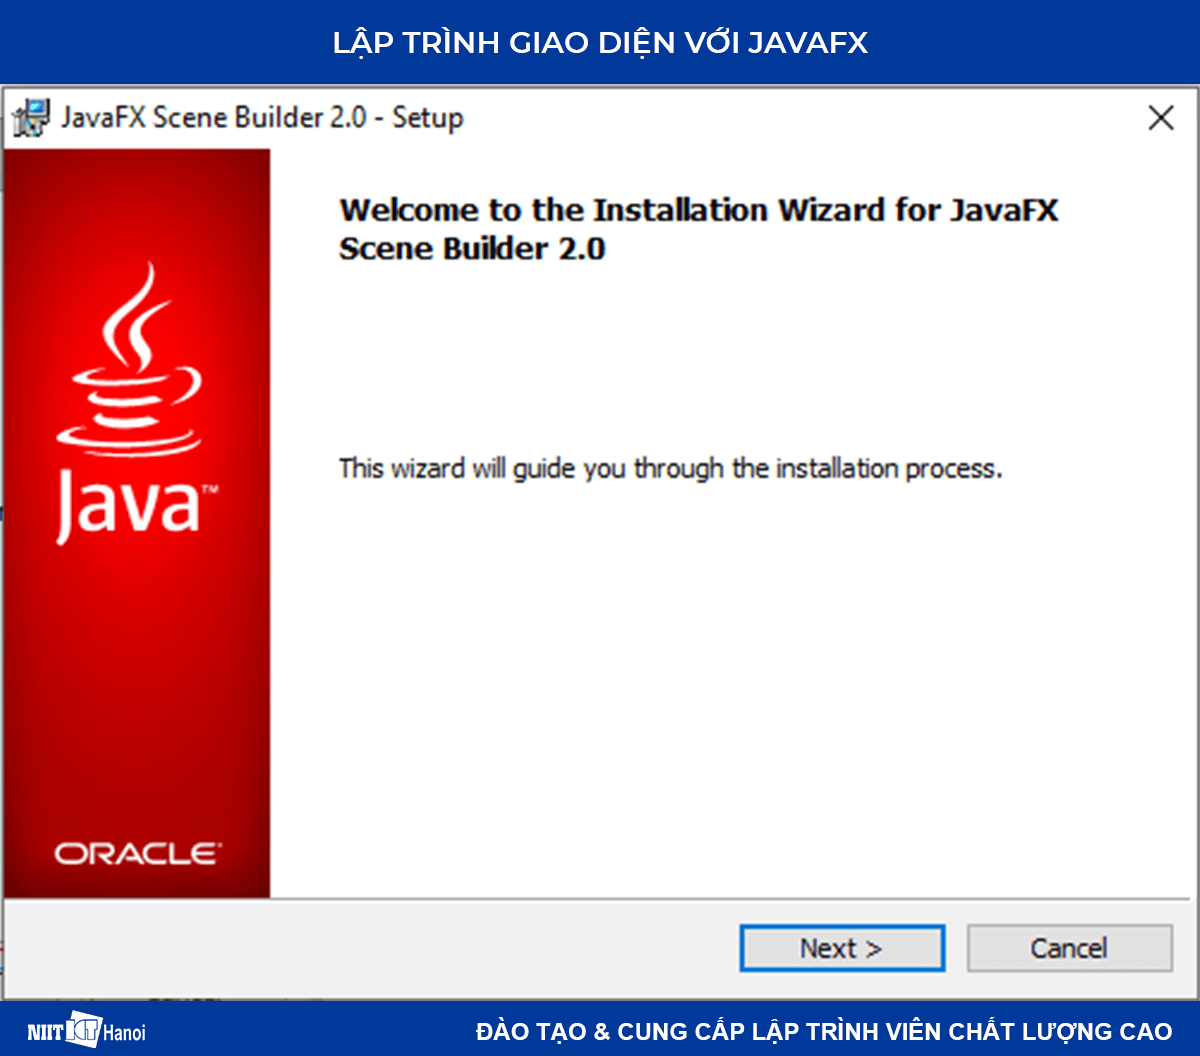 Lập trình giao diện trong Java với JavaFX